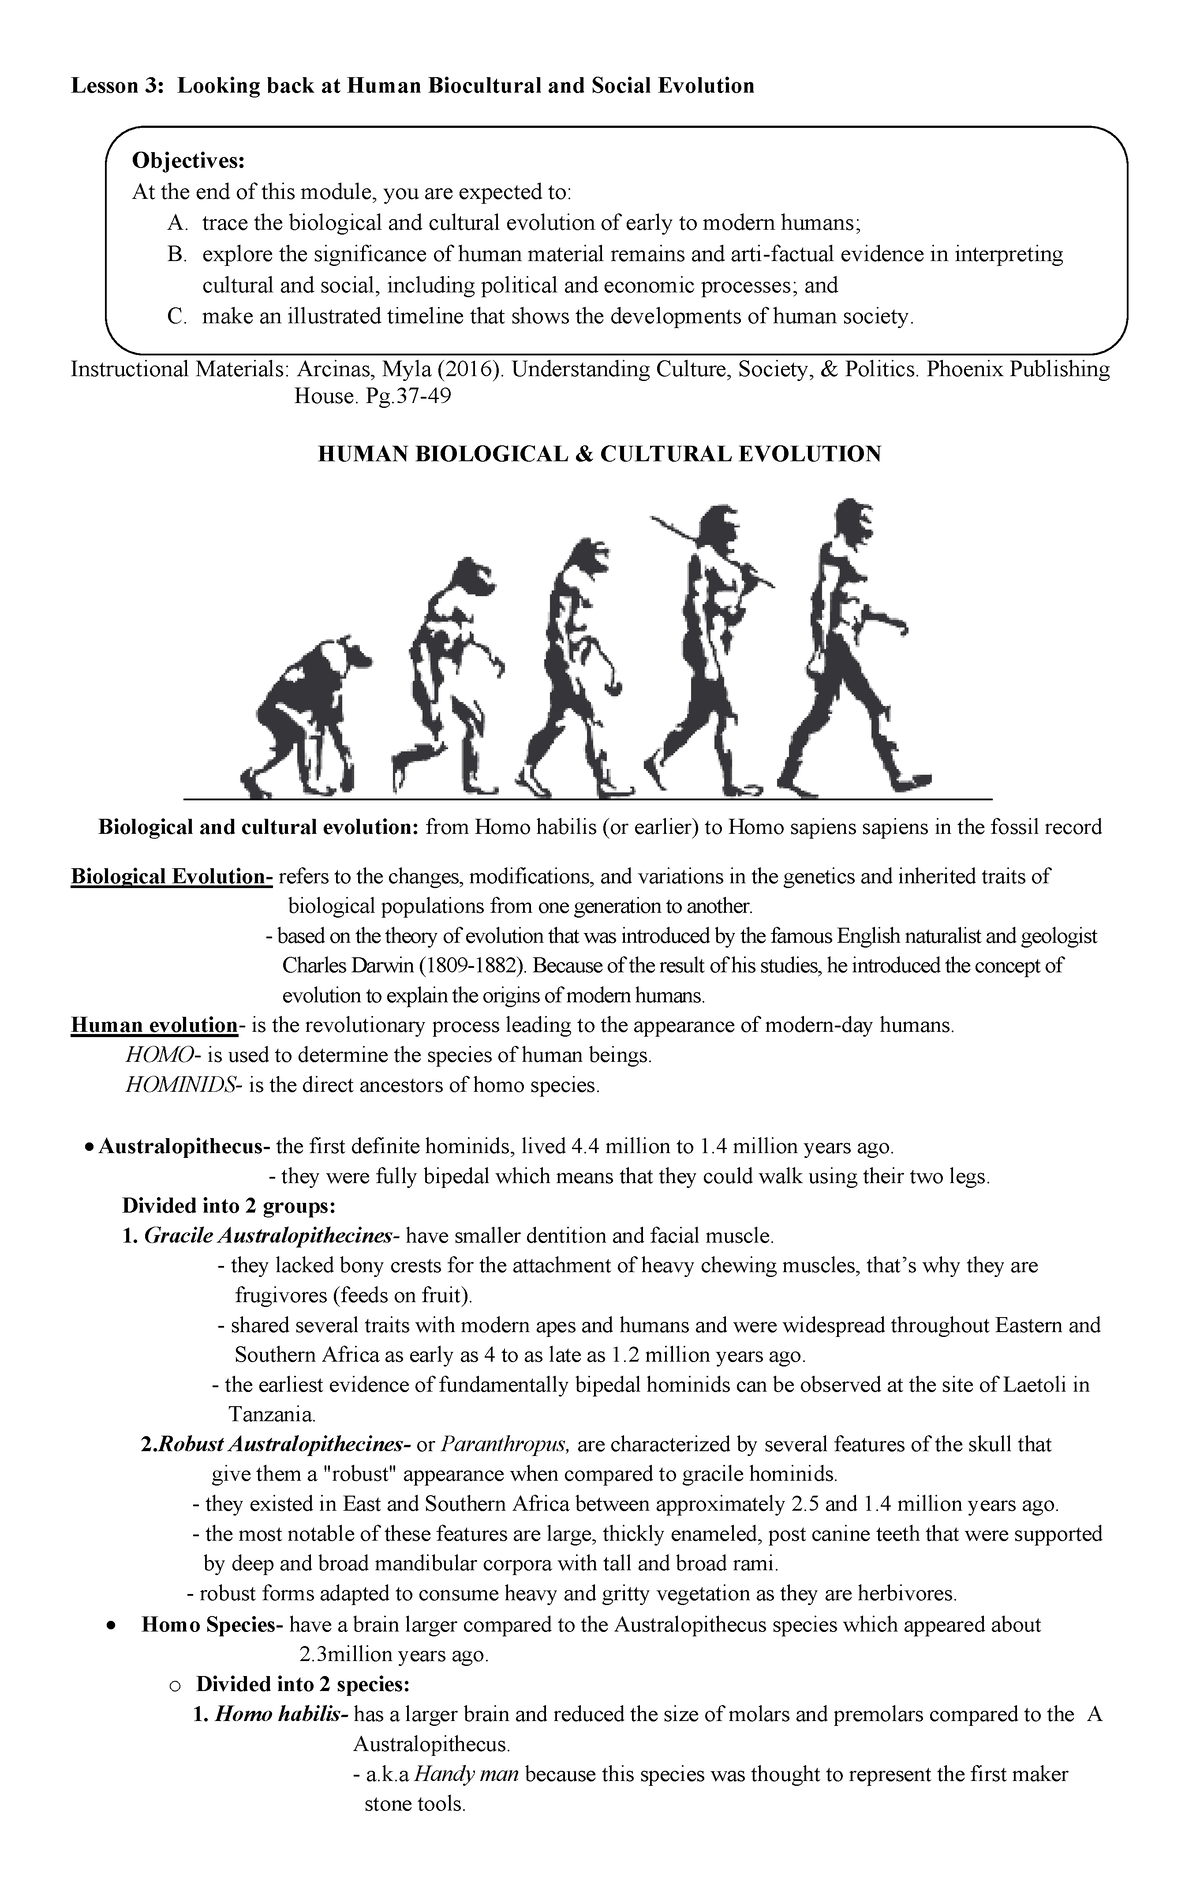 essay on social evolution